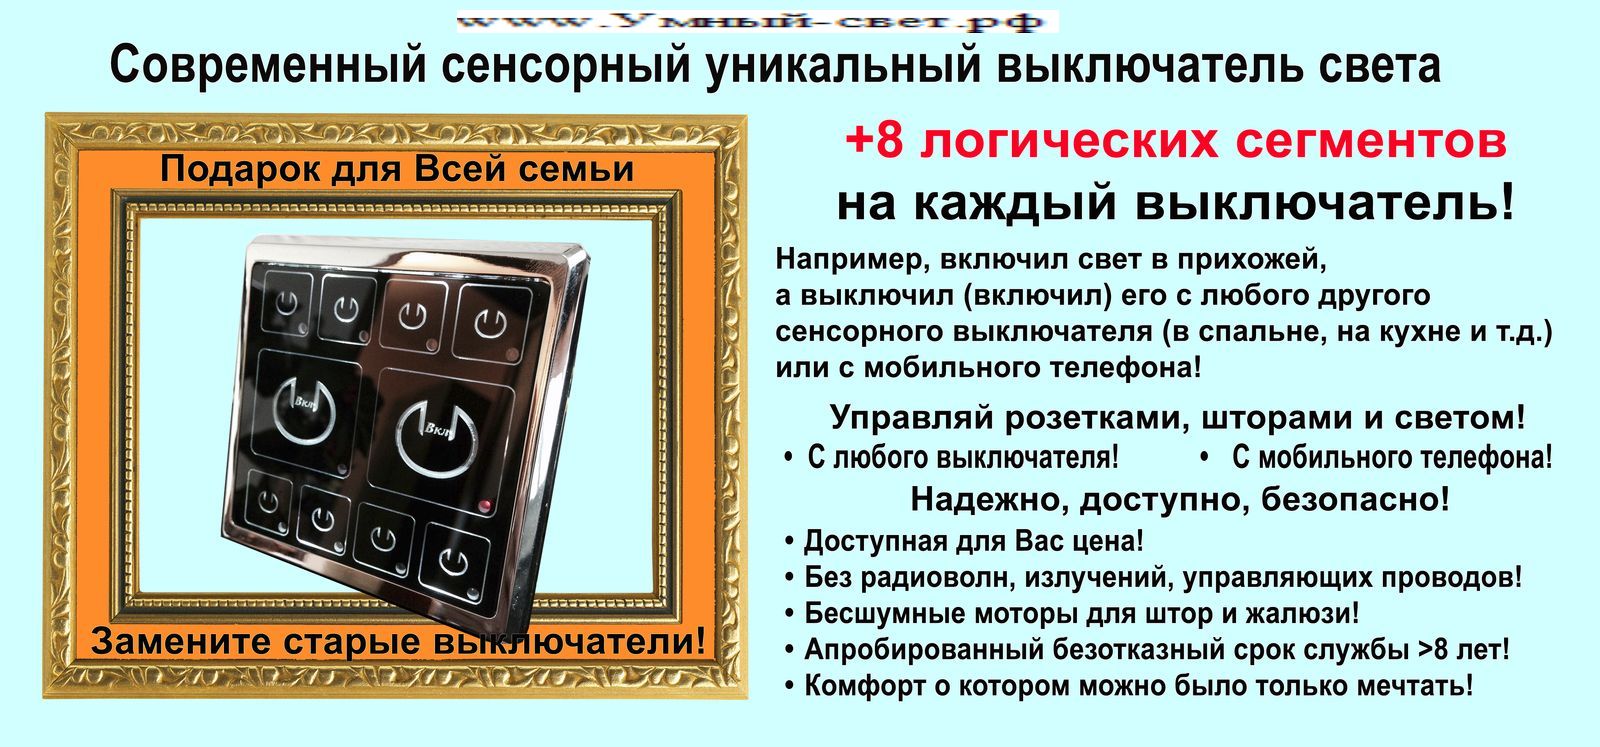 Приемник позволяет управлять системой Умный Свет и Умный Дом от компании Умный-свет.РФ